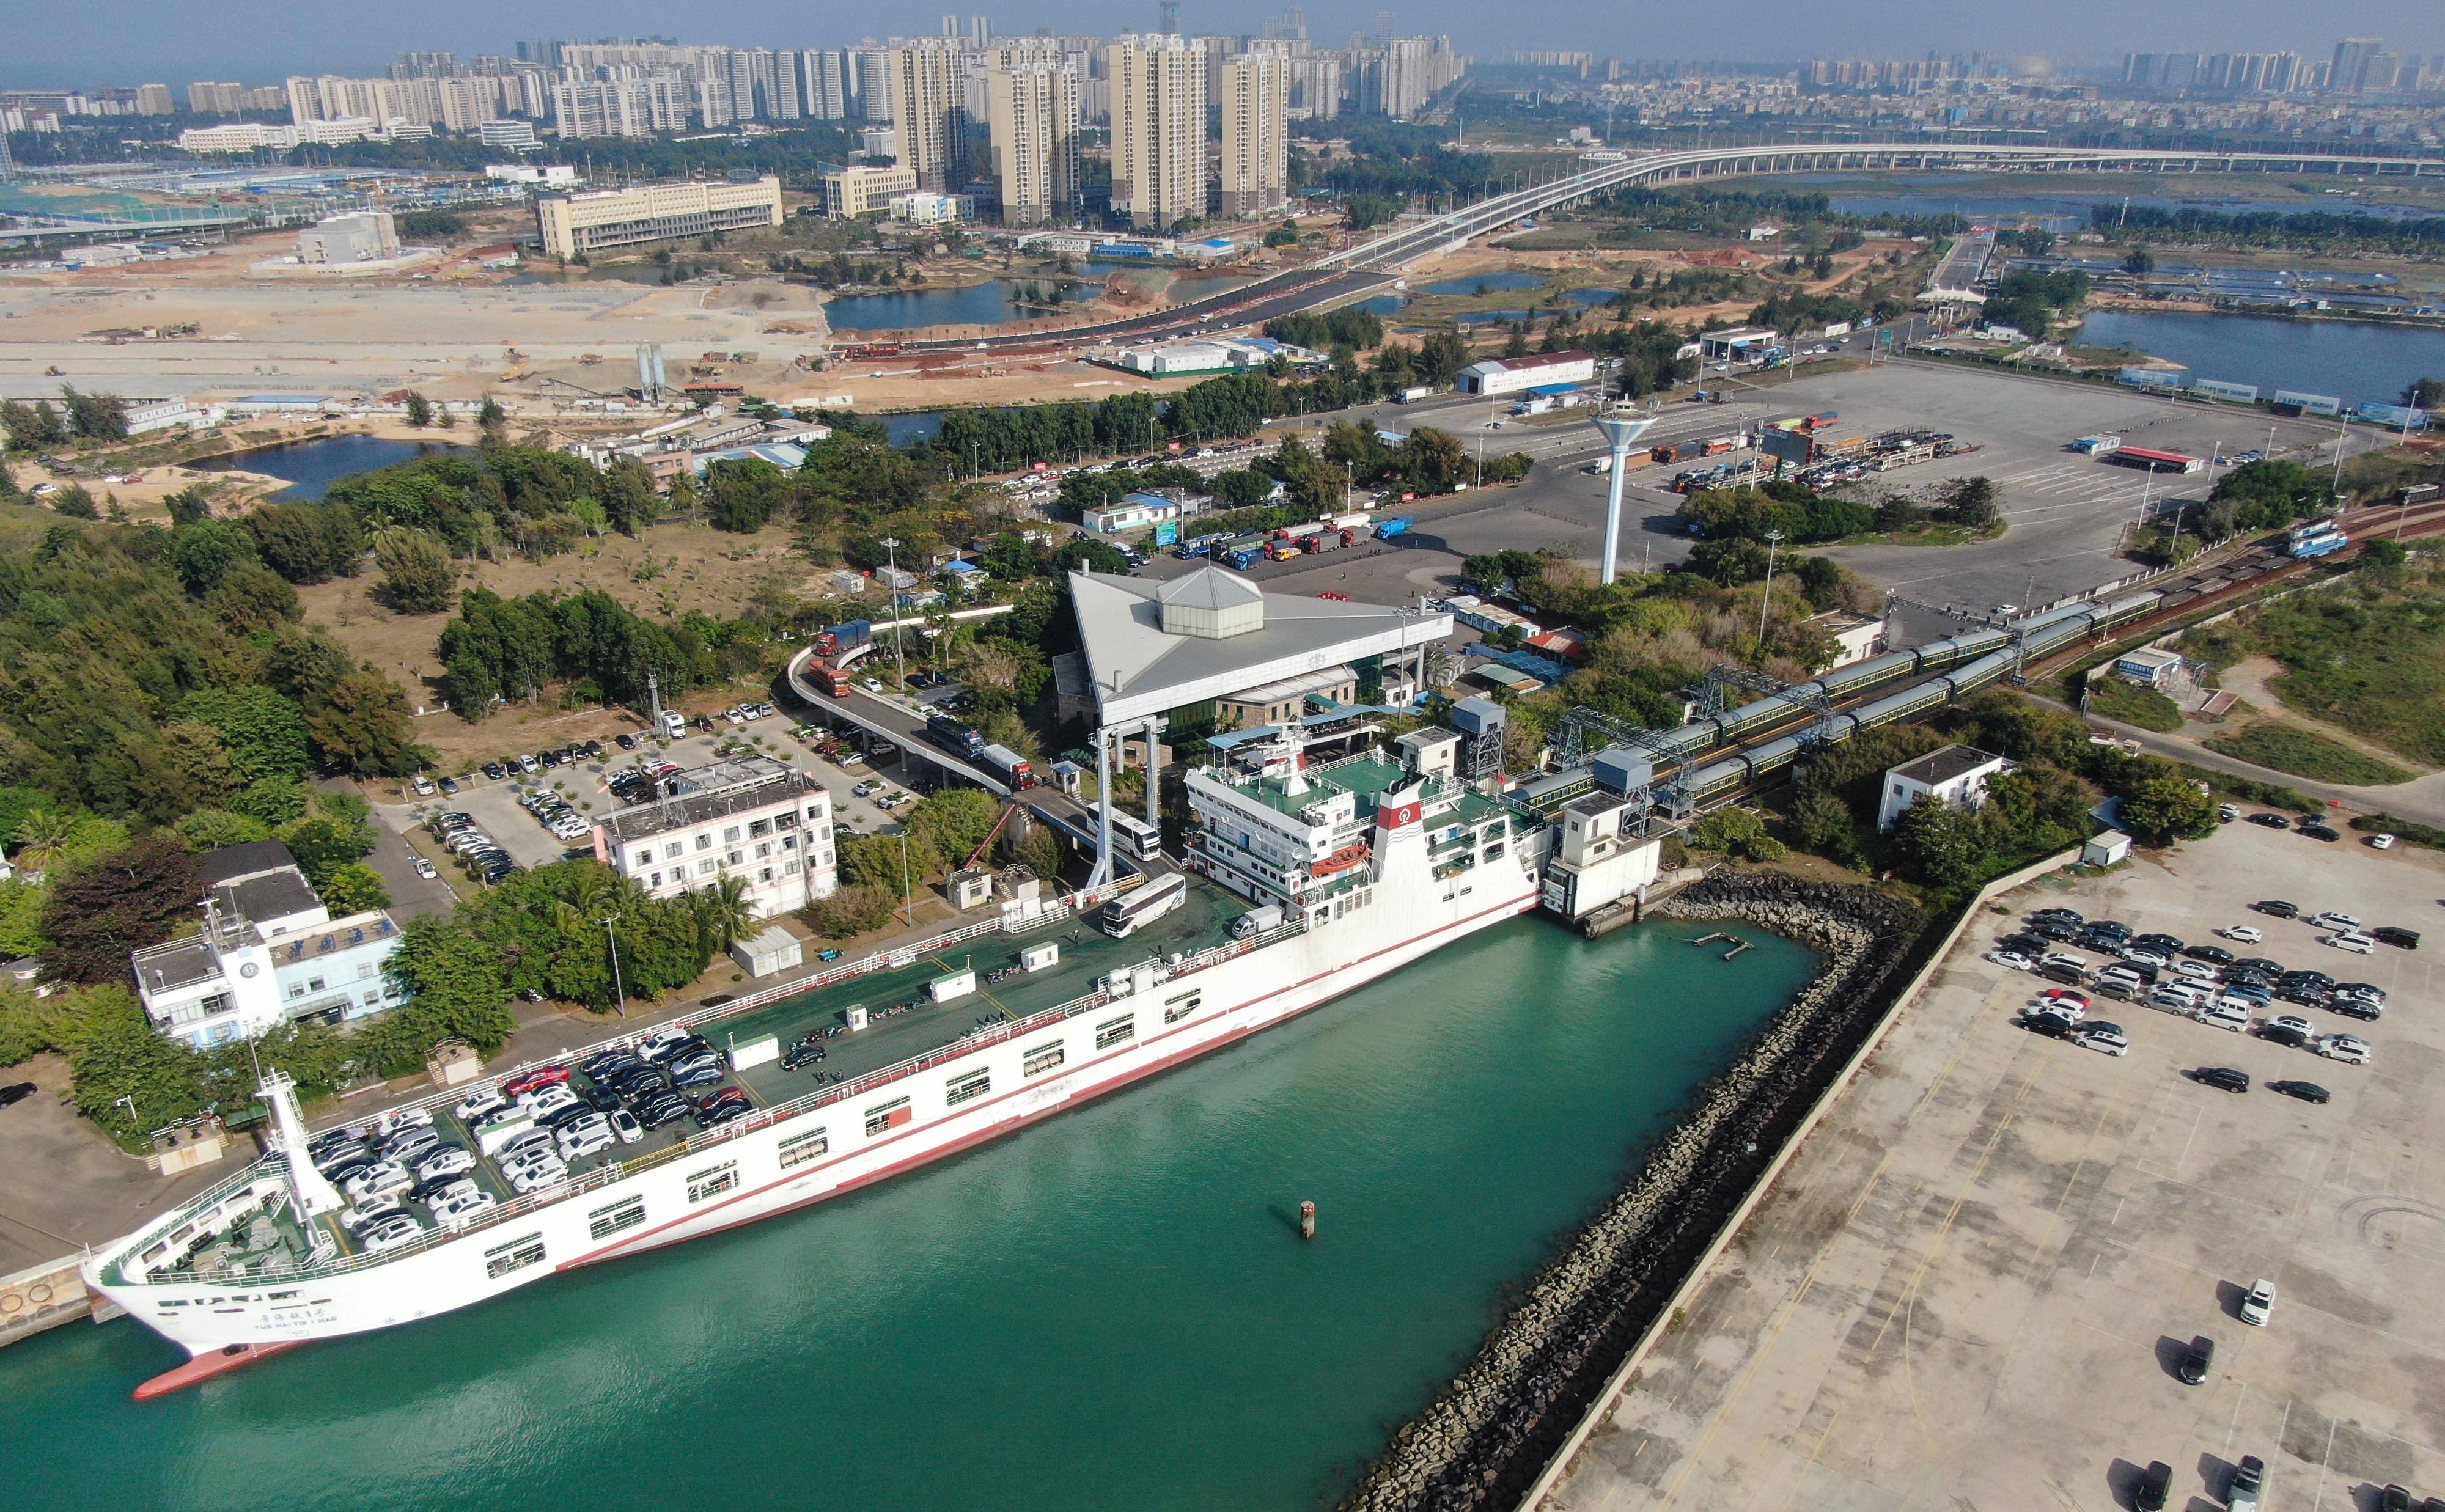 1月6日,在粤海铁路轮渡码头,粤海铁1号轮渡停靠泊位并装载列车